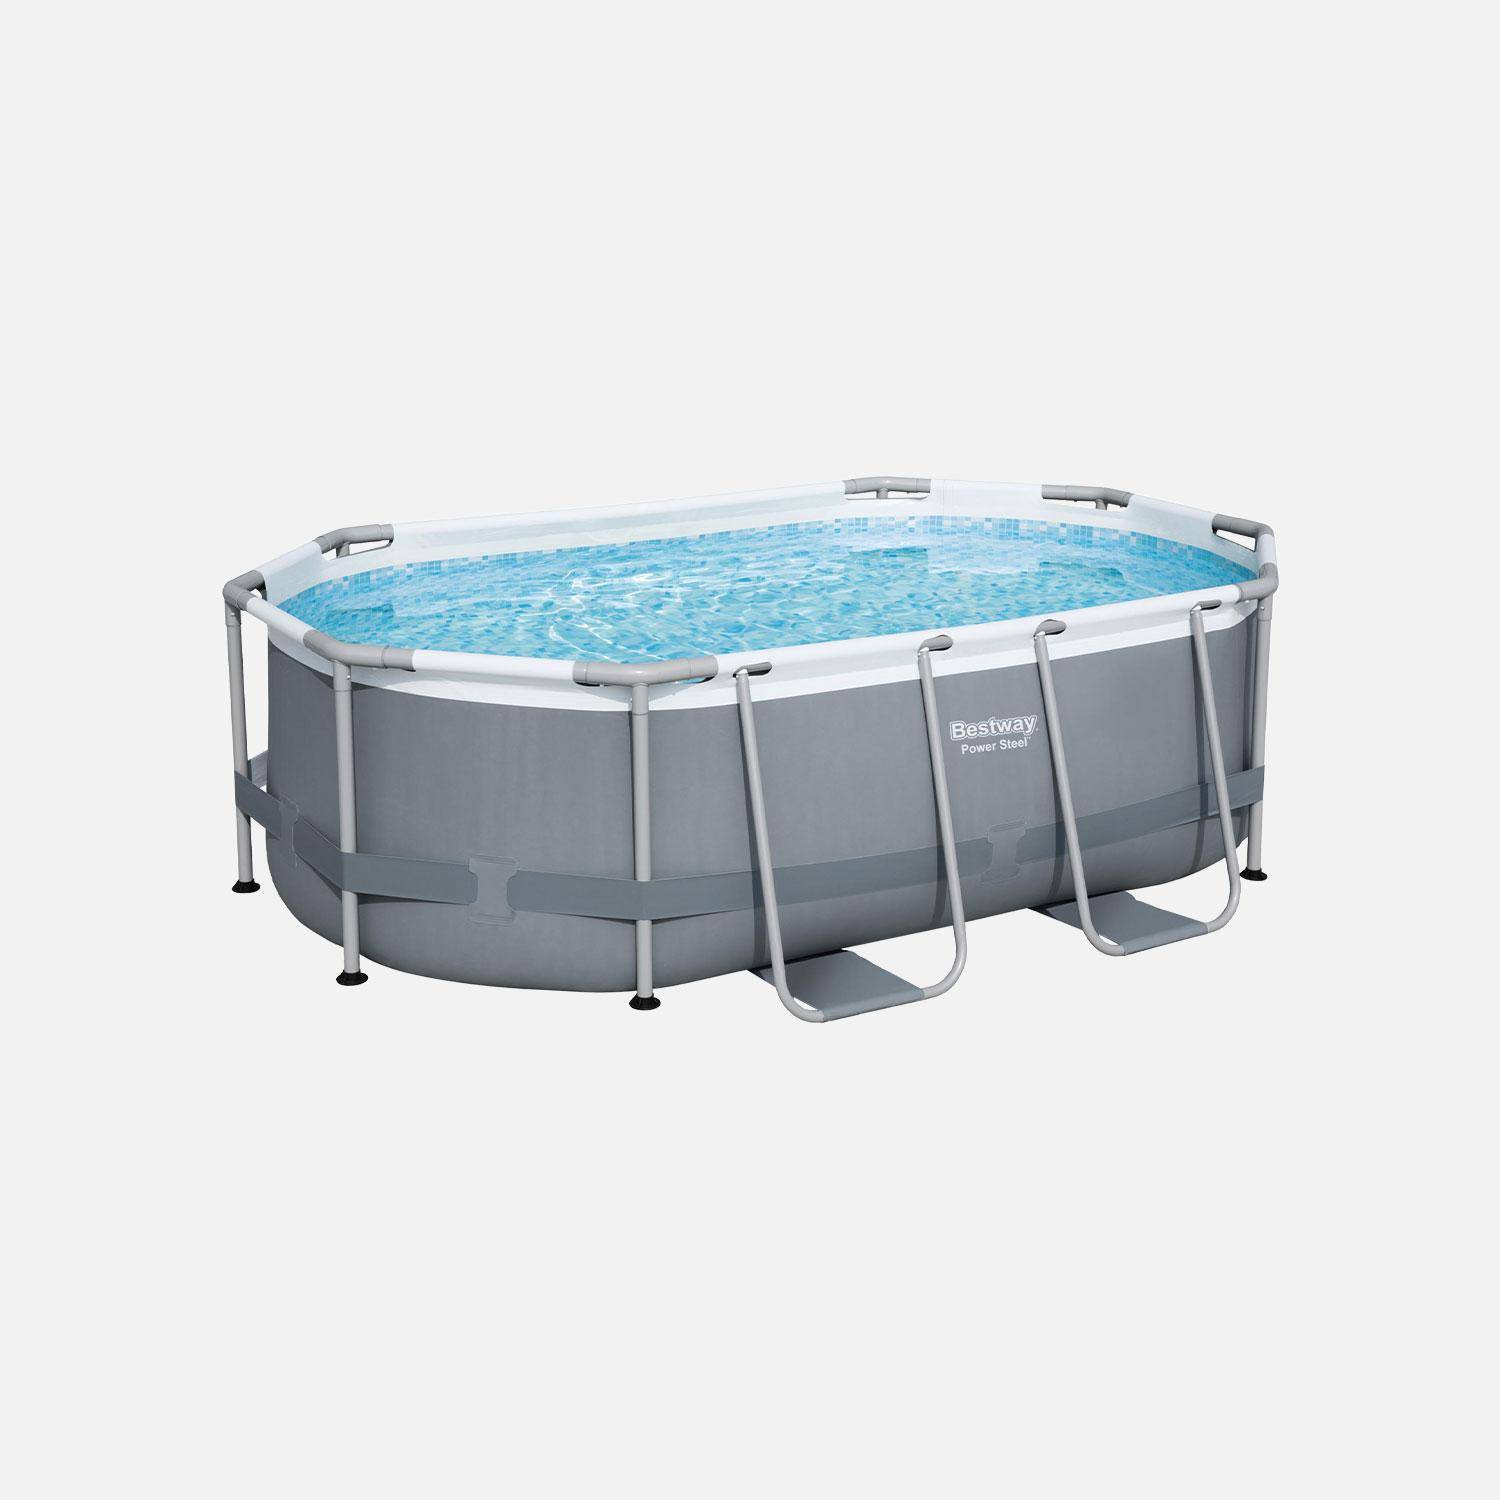 Compleet BESTWAY zwembad – Spinelle grijs – Ovaal frame zwembad 3x2 m, inclusief filterpomp en reparatieset ,sweeek,Photo2